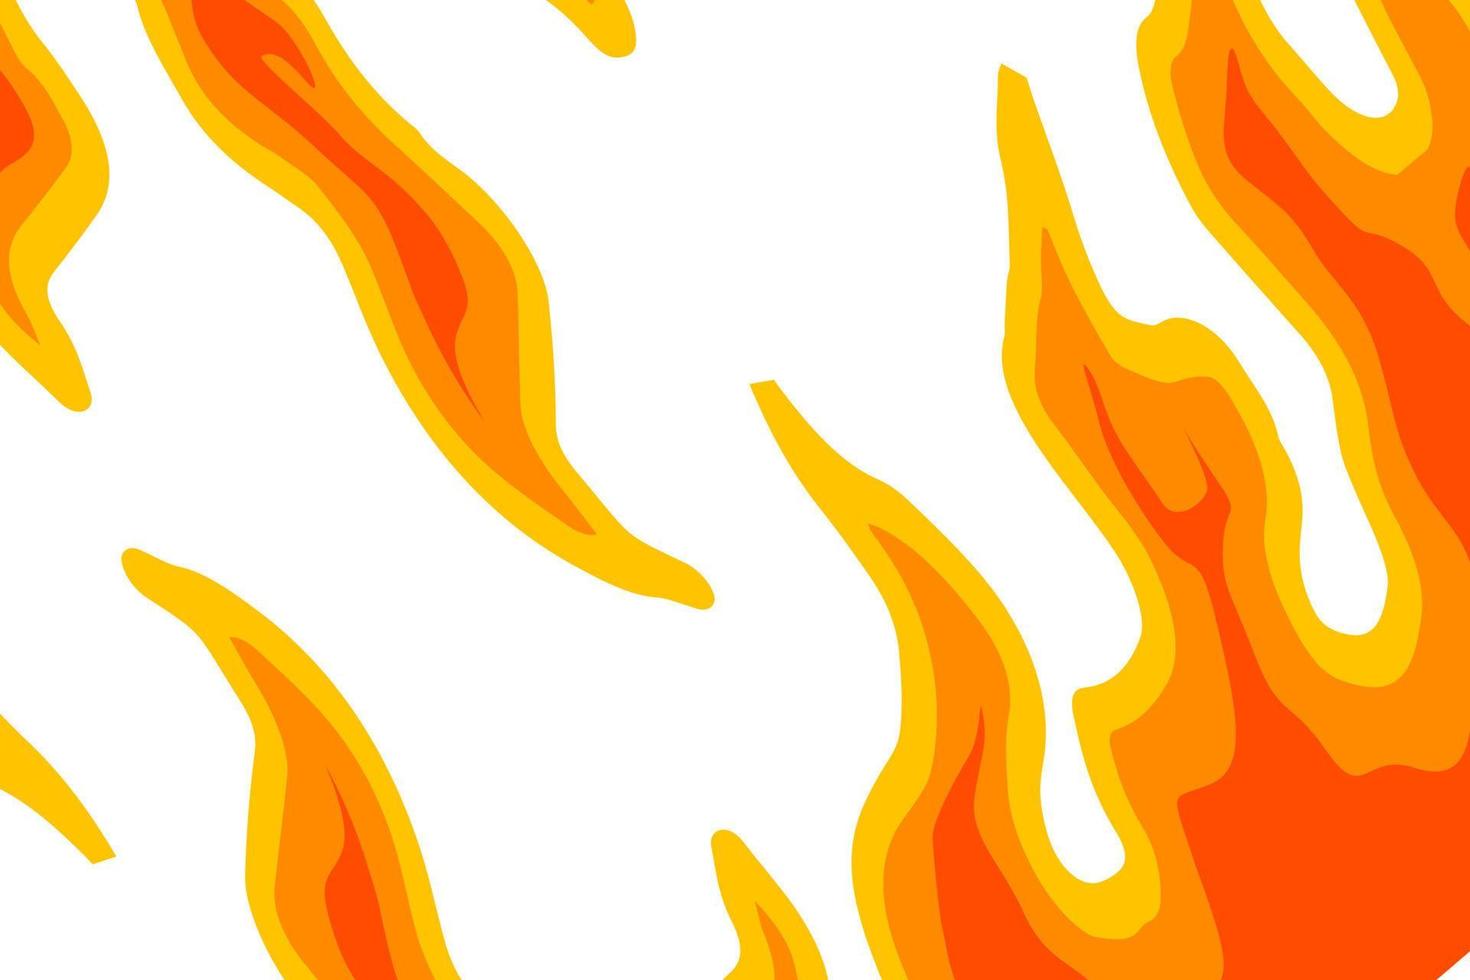 Flame Background Vector Art illustration designs